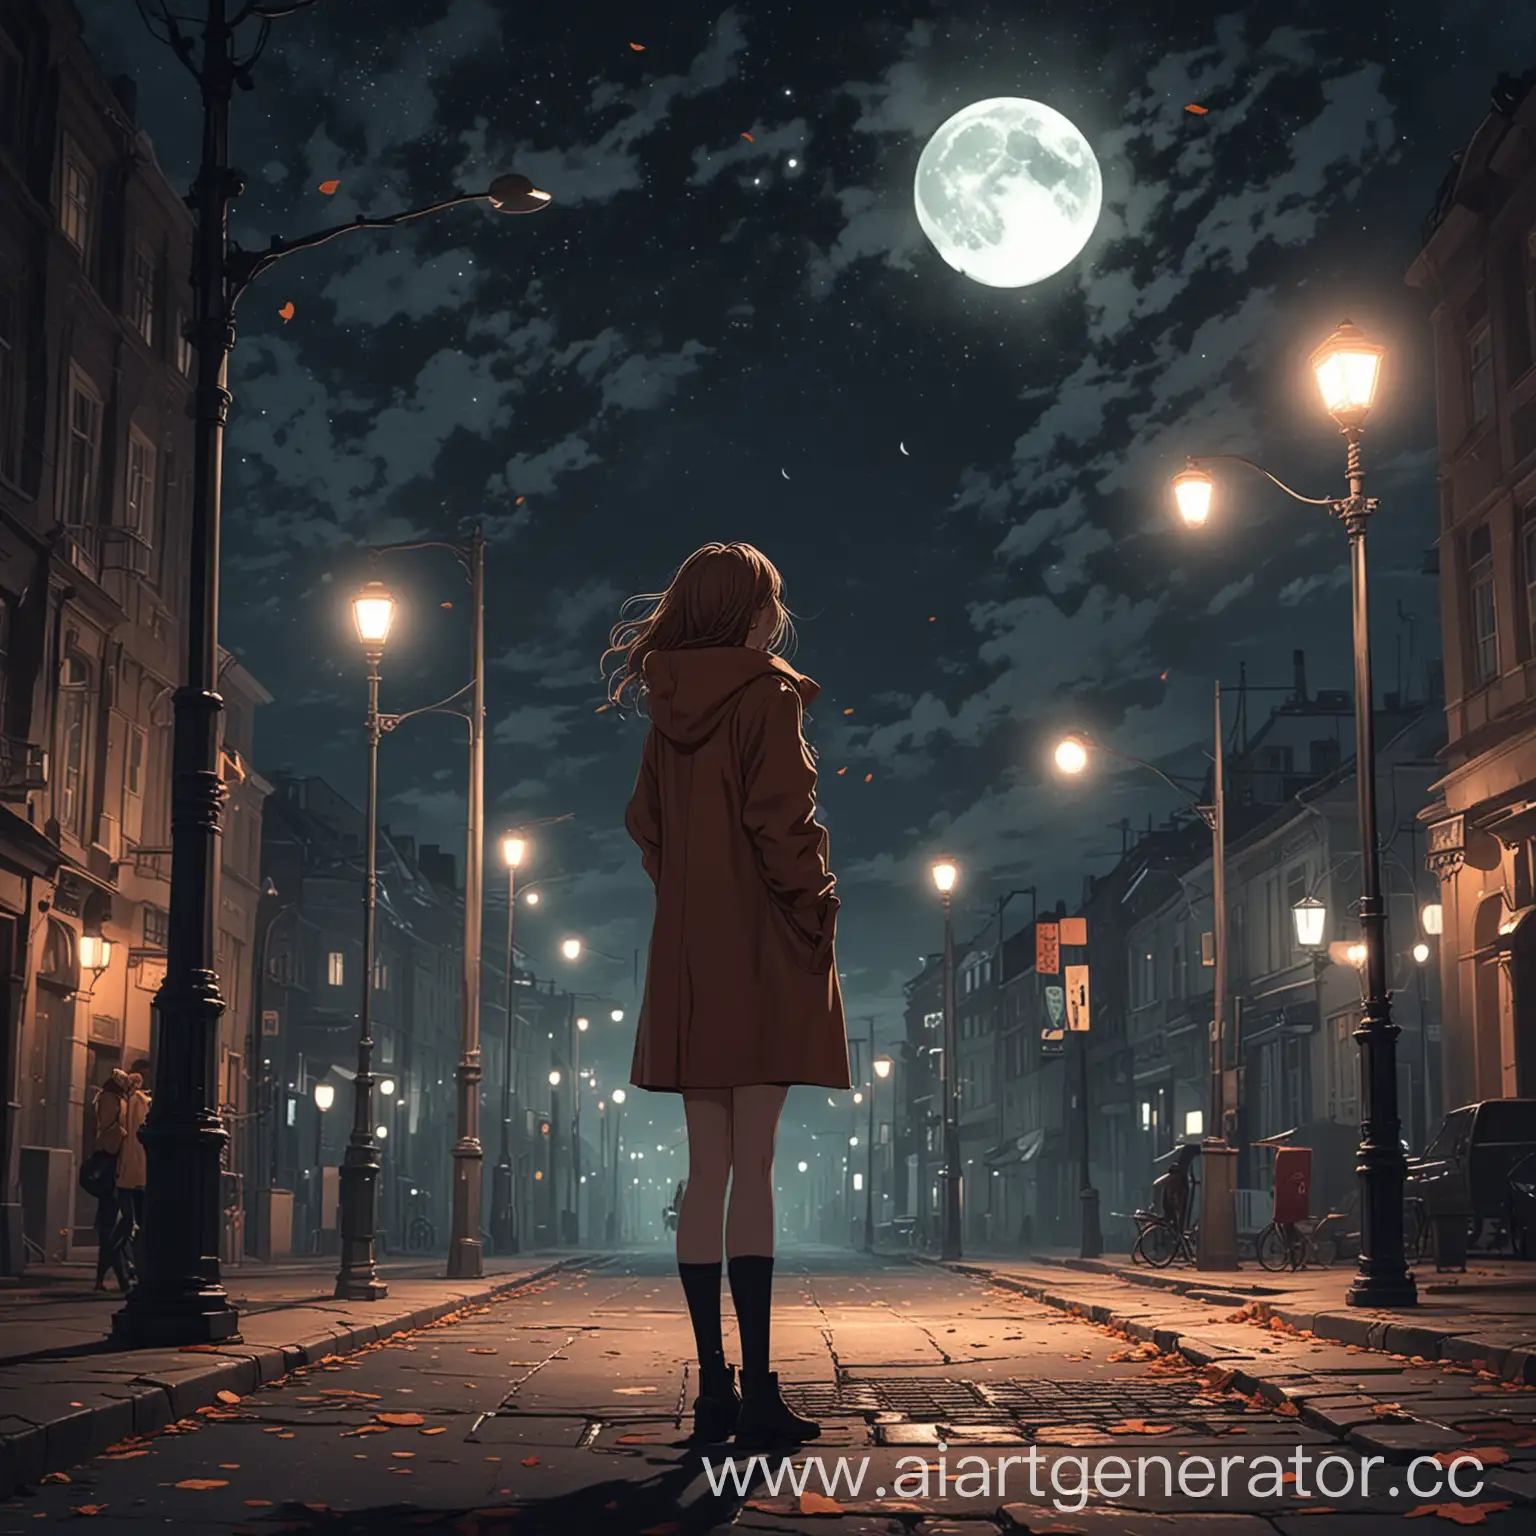 Аниме стиль, современный осенний город вечером, девушка в пальто смотрит на небо, на котором уже луна, на улице темно и горят фонари